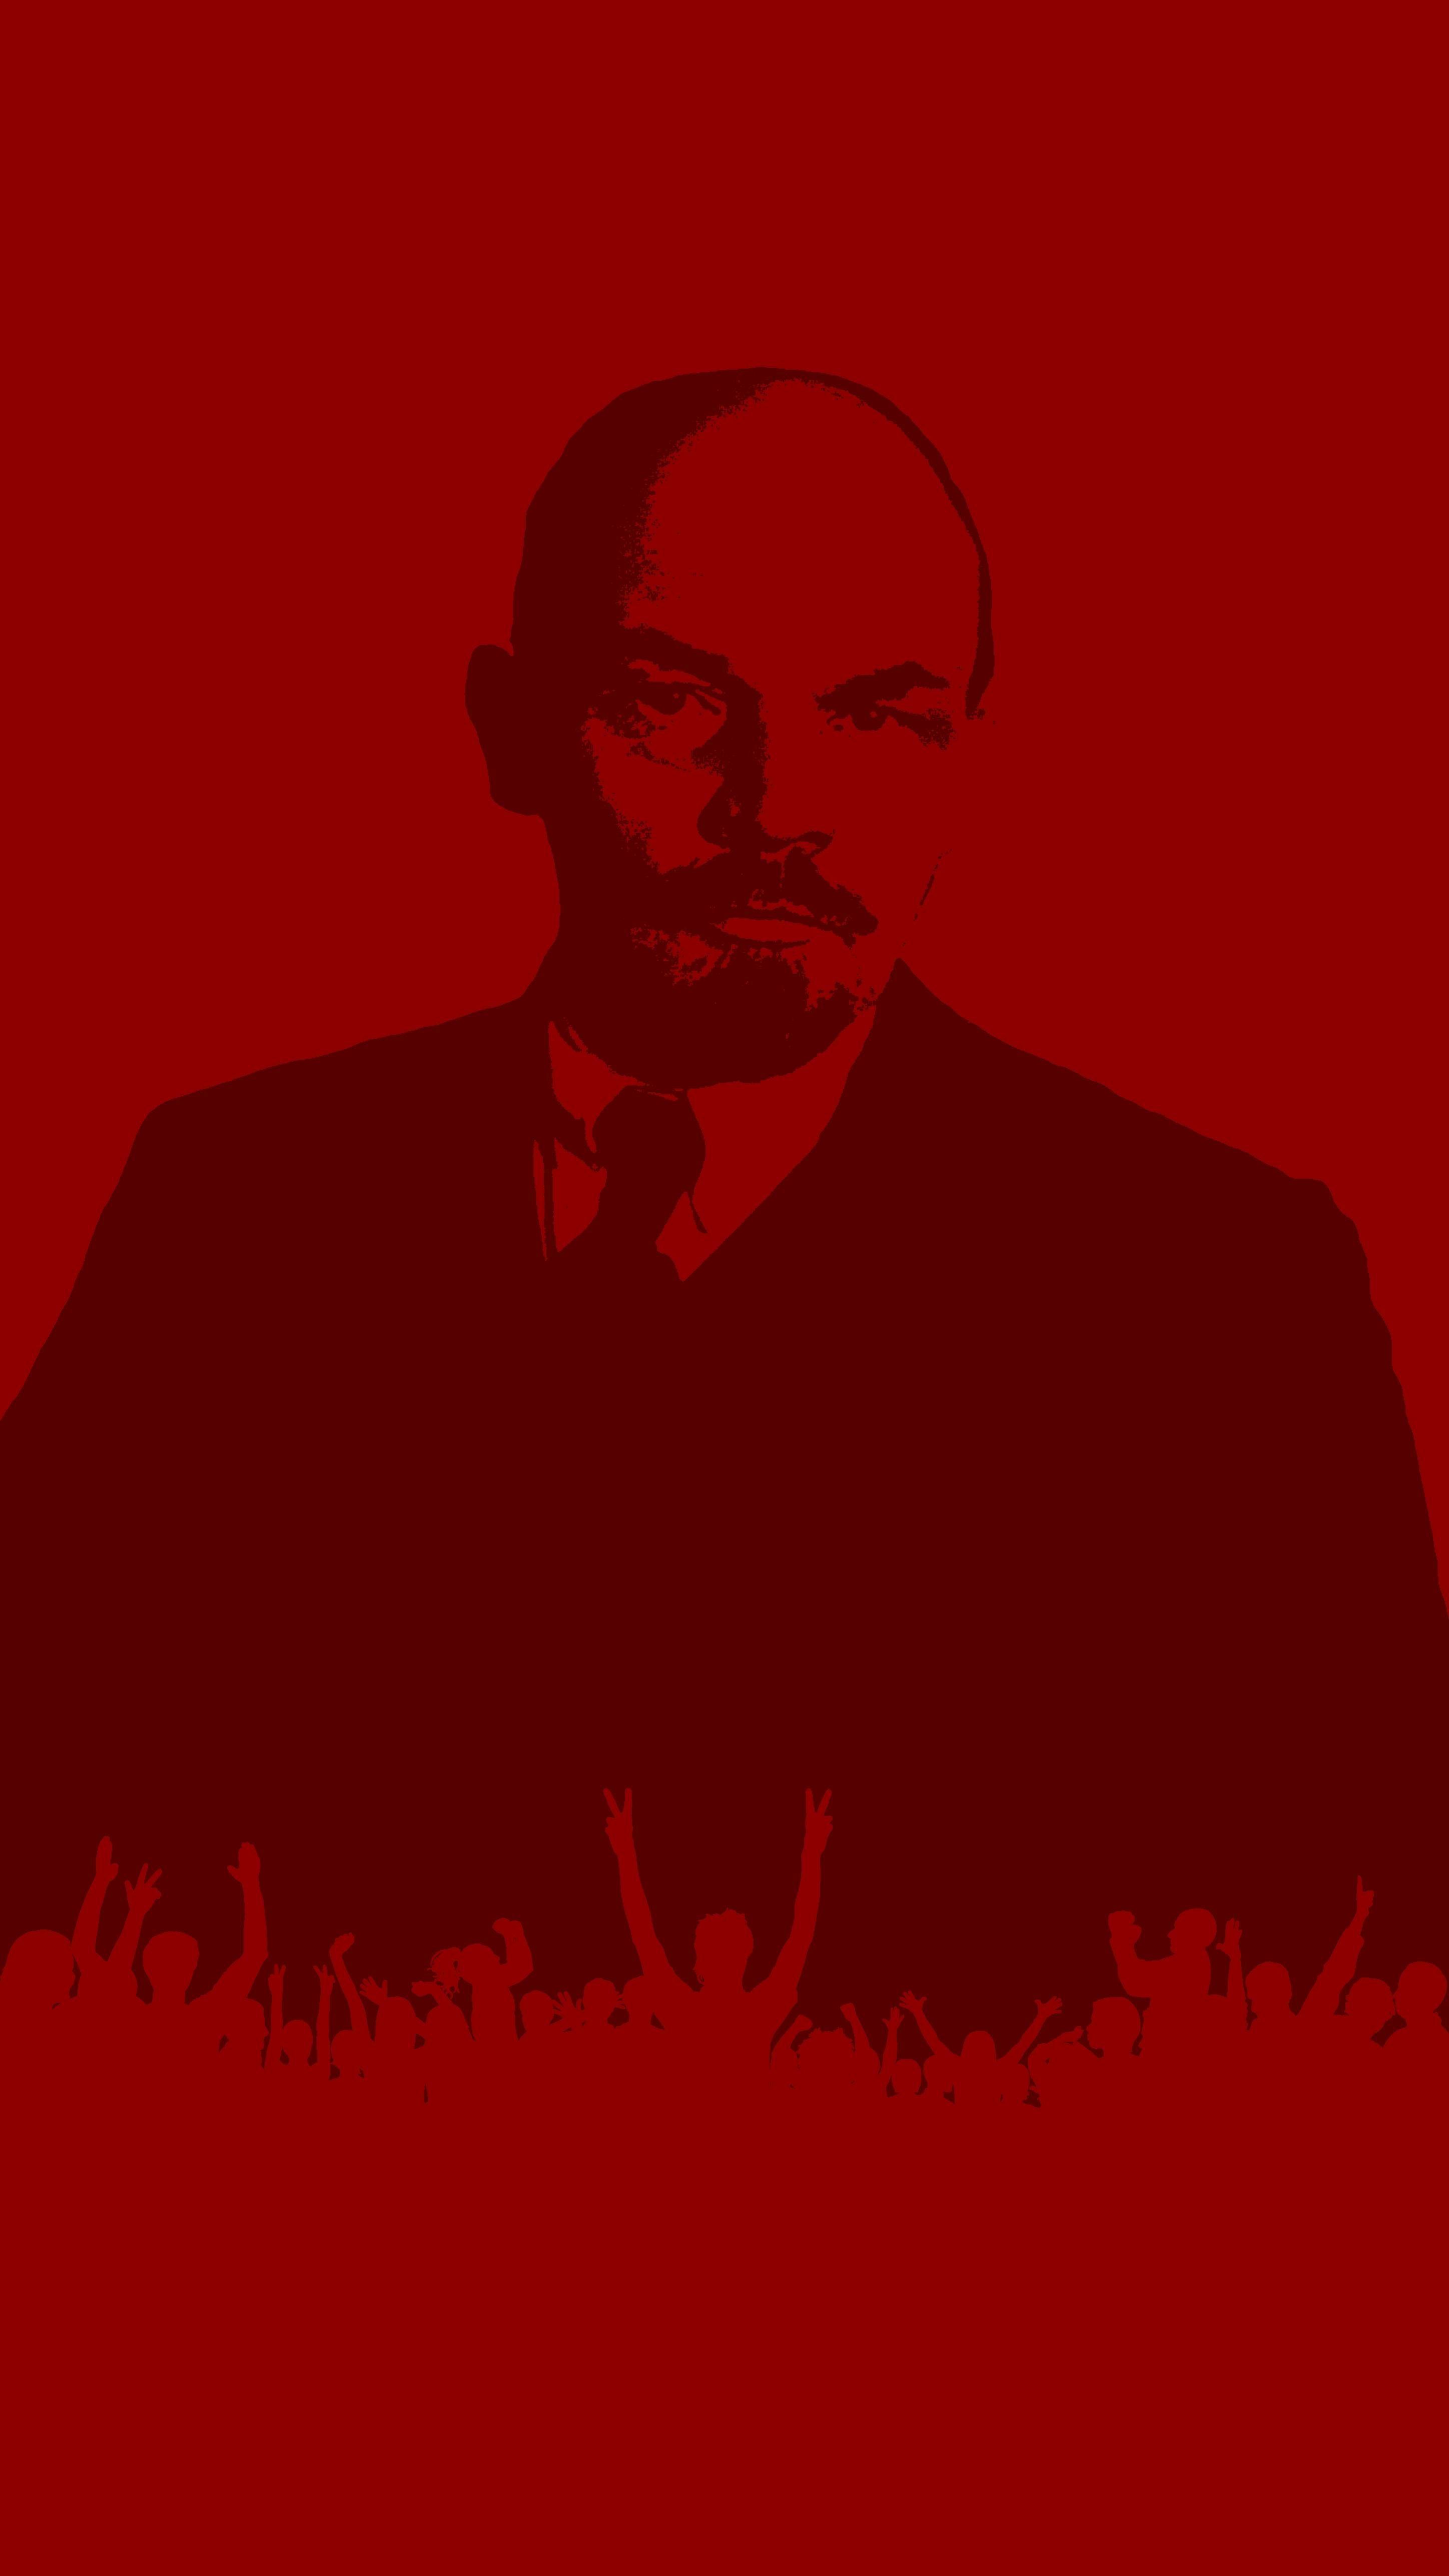 Vladimir Lenin vintage propaganda poster, graffiti stencil style